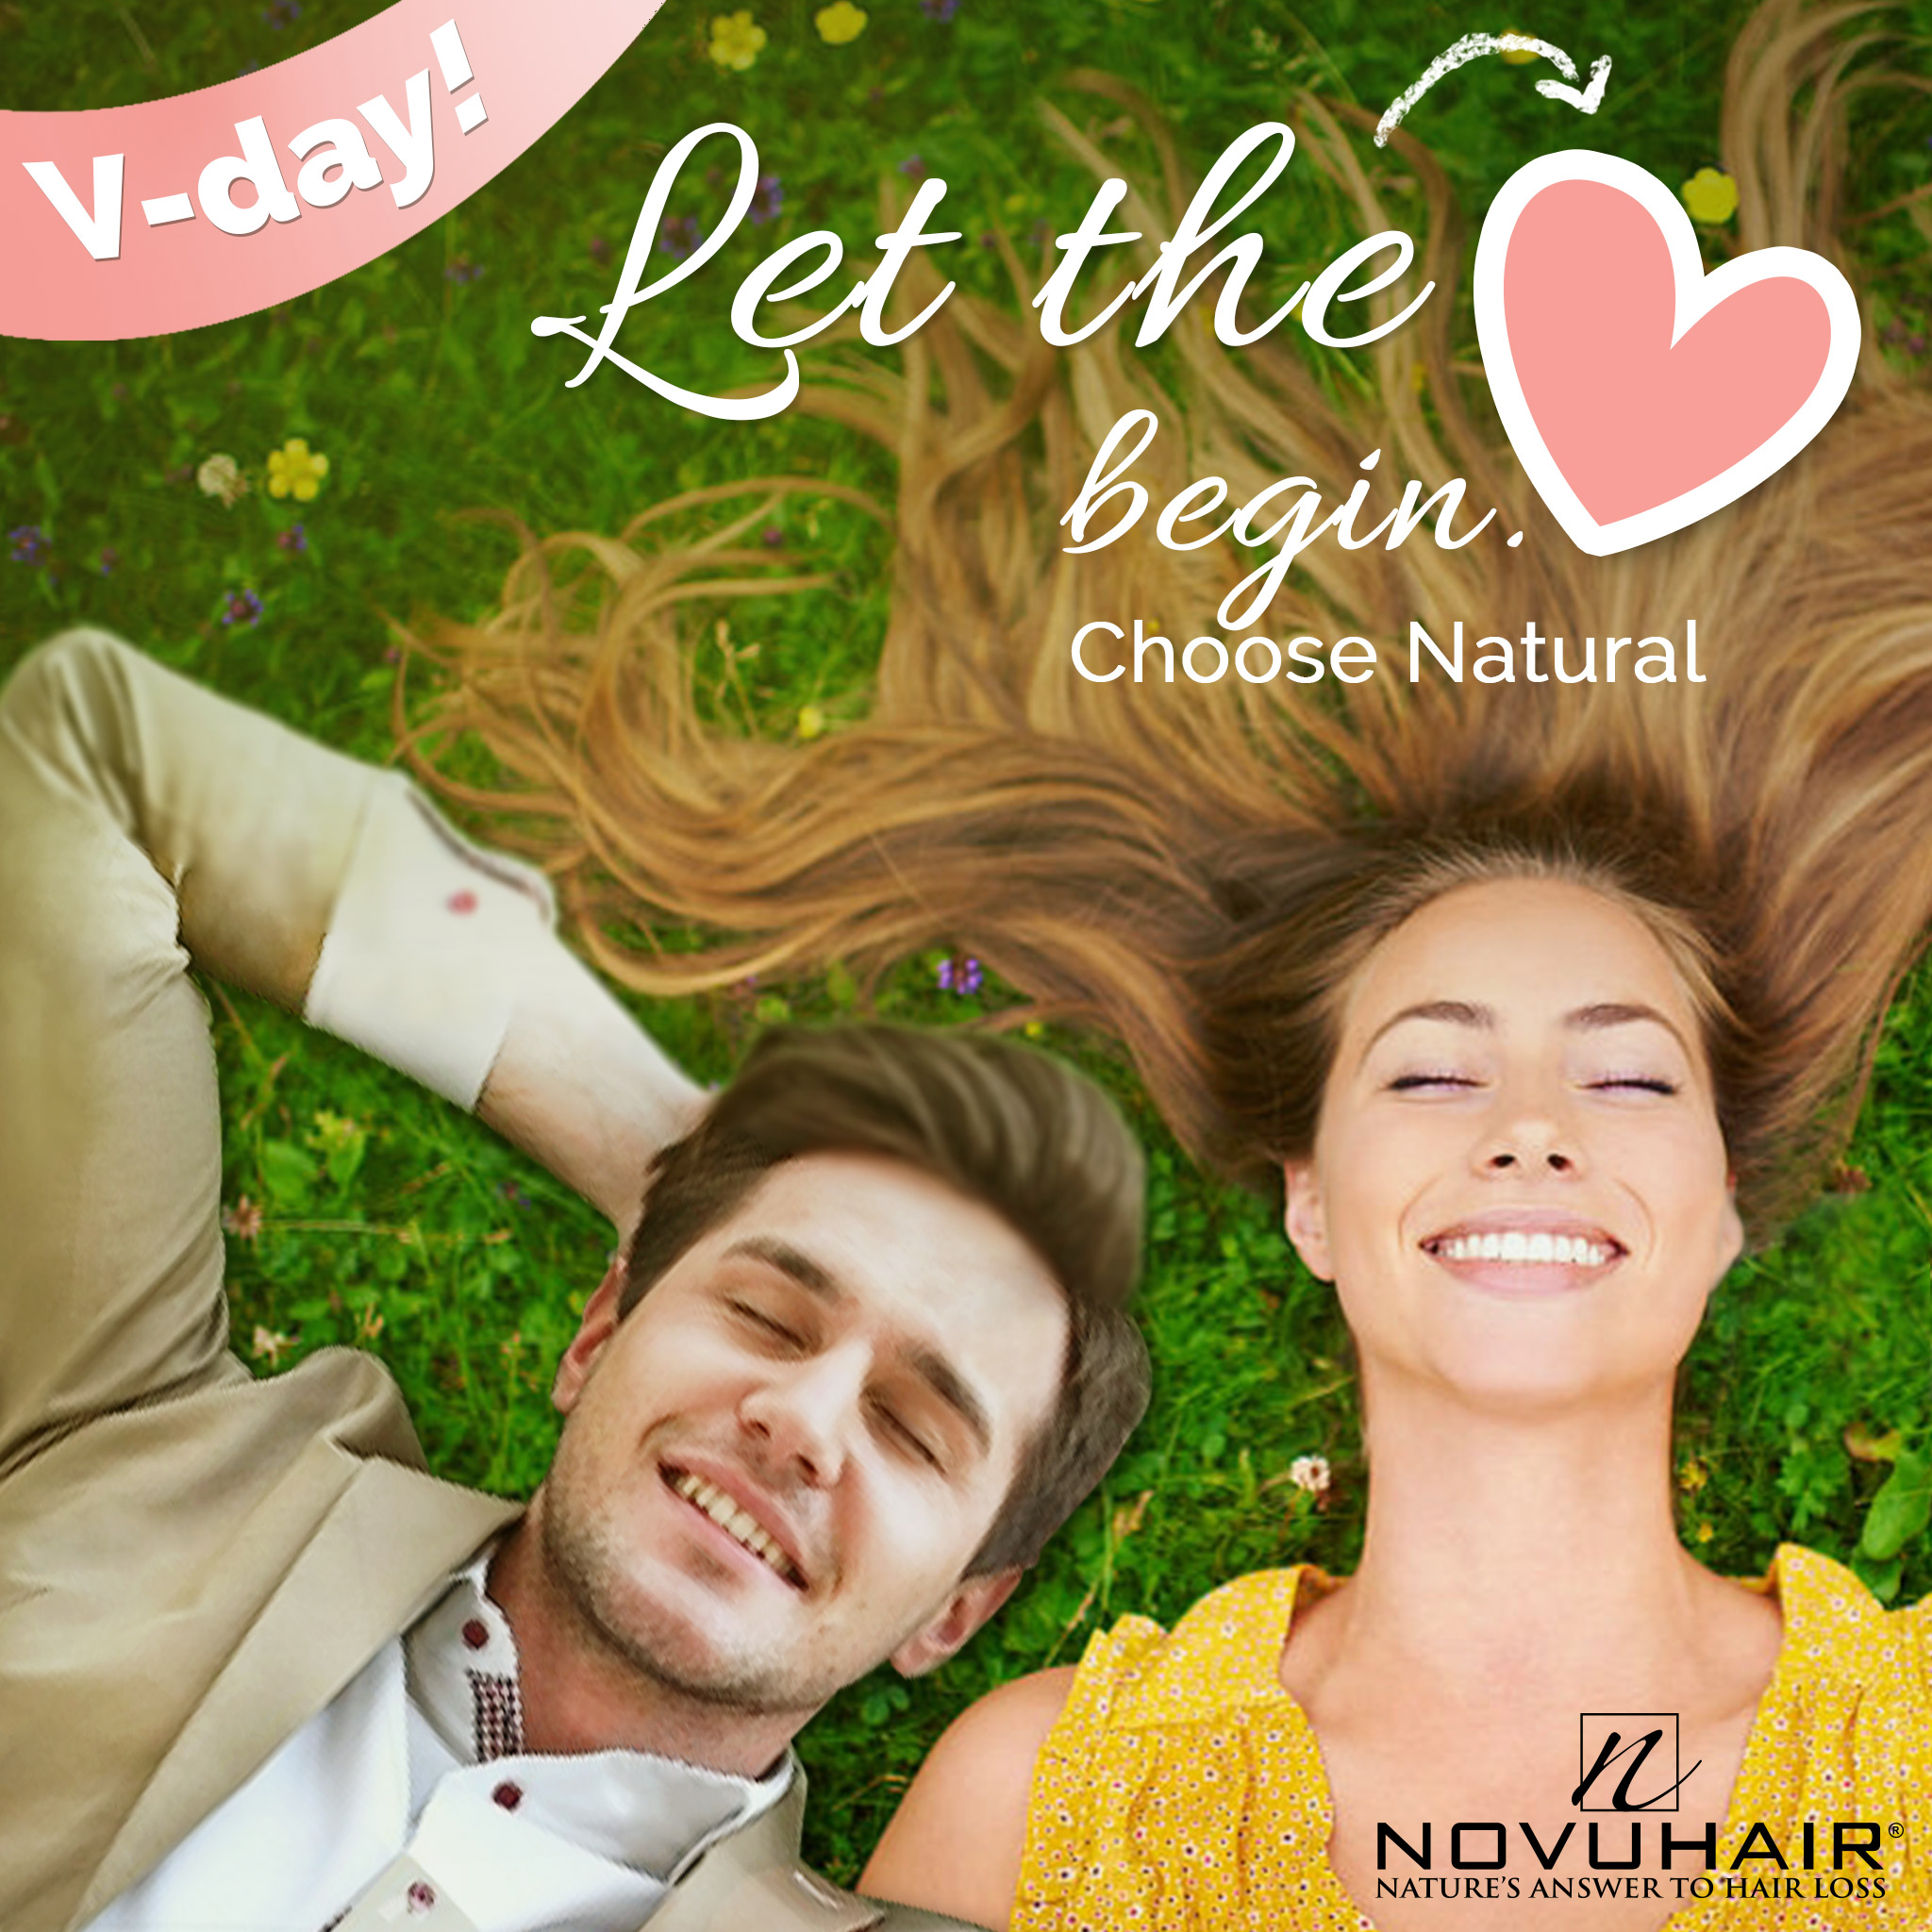 Novuhair gives a natural love this V-Day